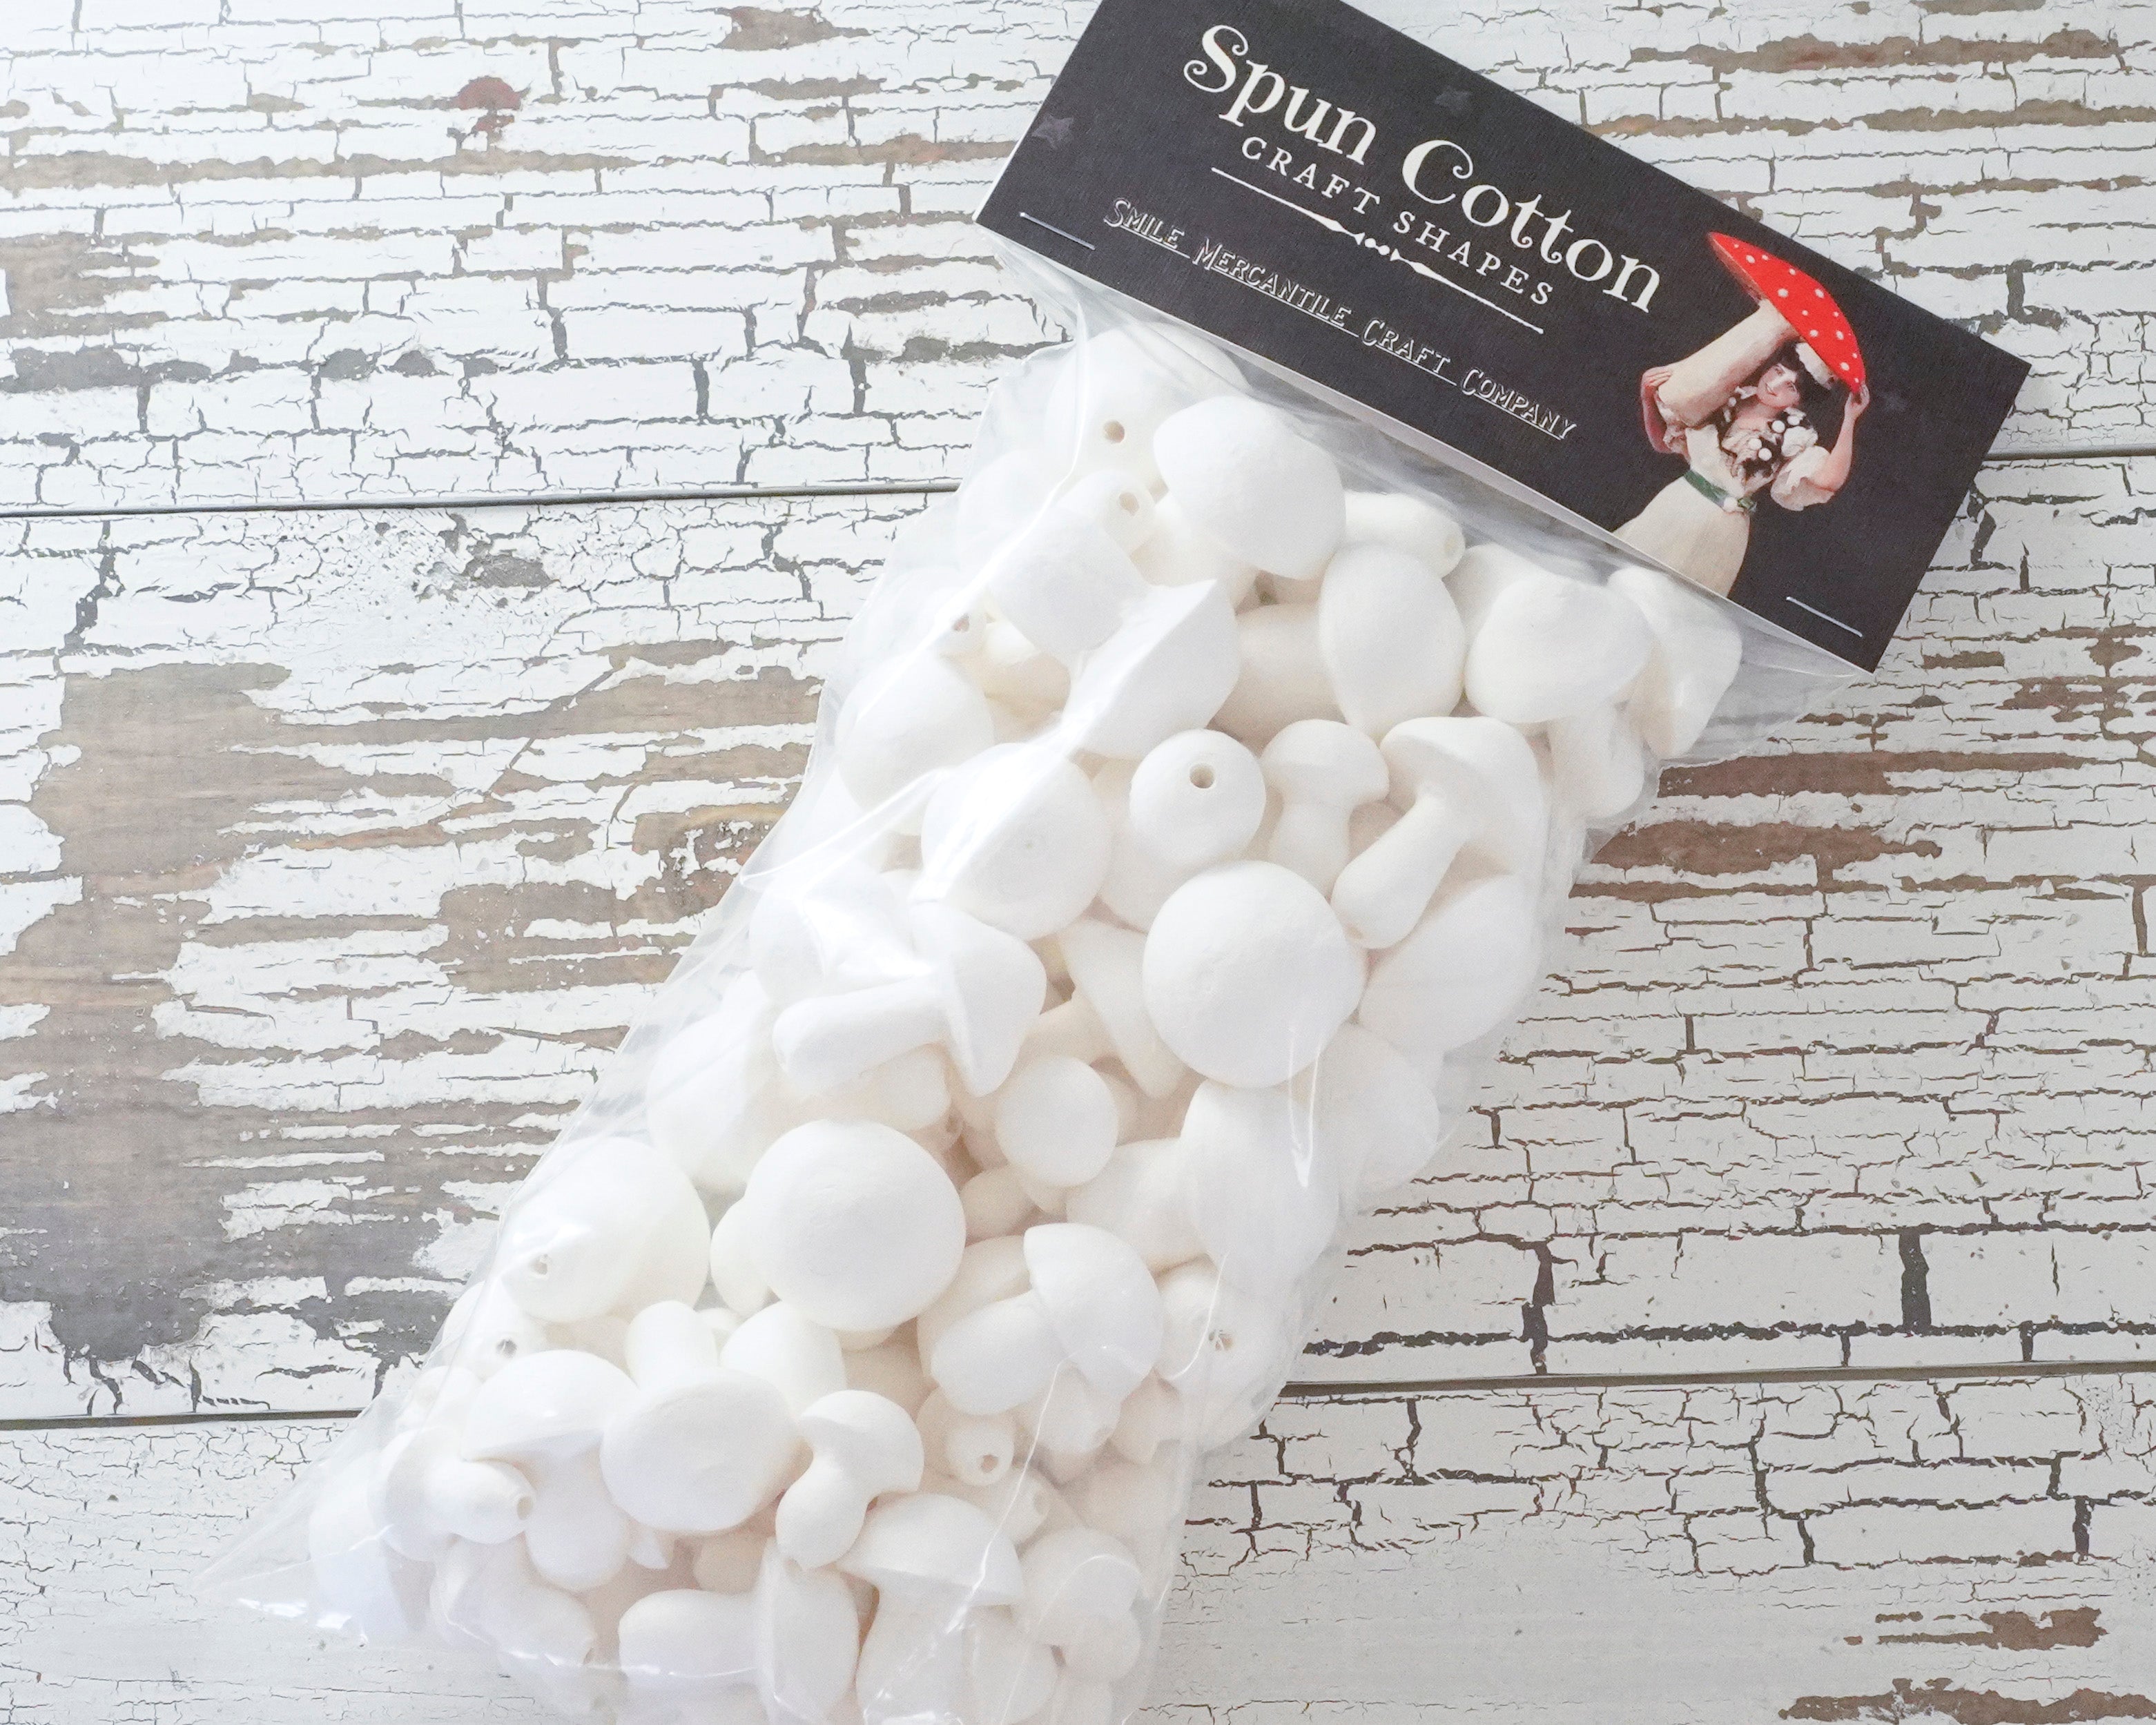 Spun Cotton Mushrooms Sampler Pack, Mixed-Size Toadstool Craft Shapes, 100 Pcs.